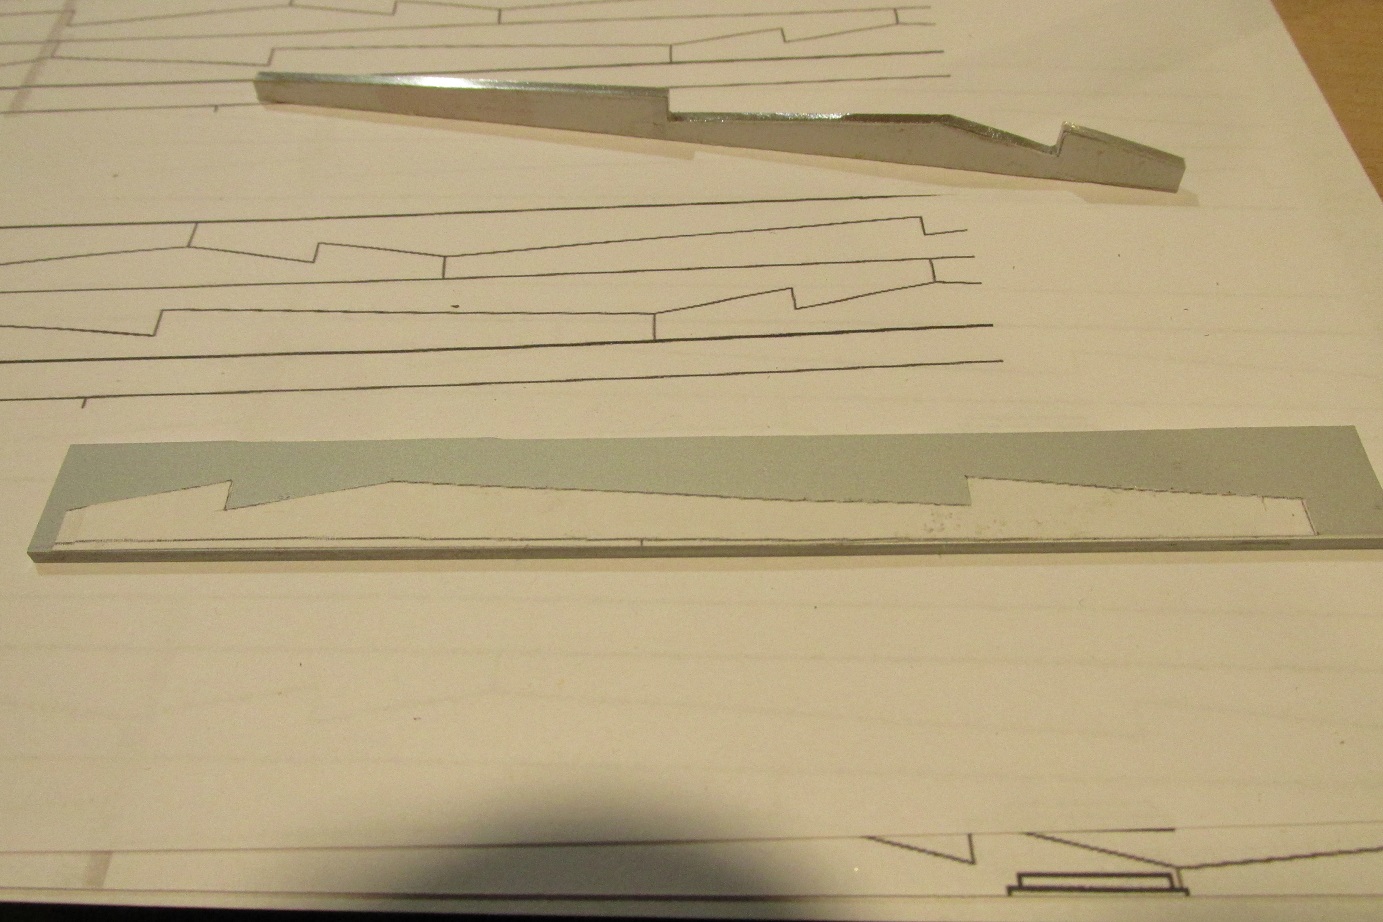 Formy do planek robię z płaskownika aluminiowego.